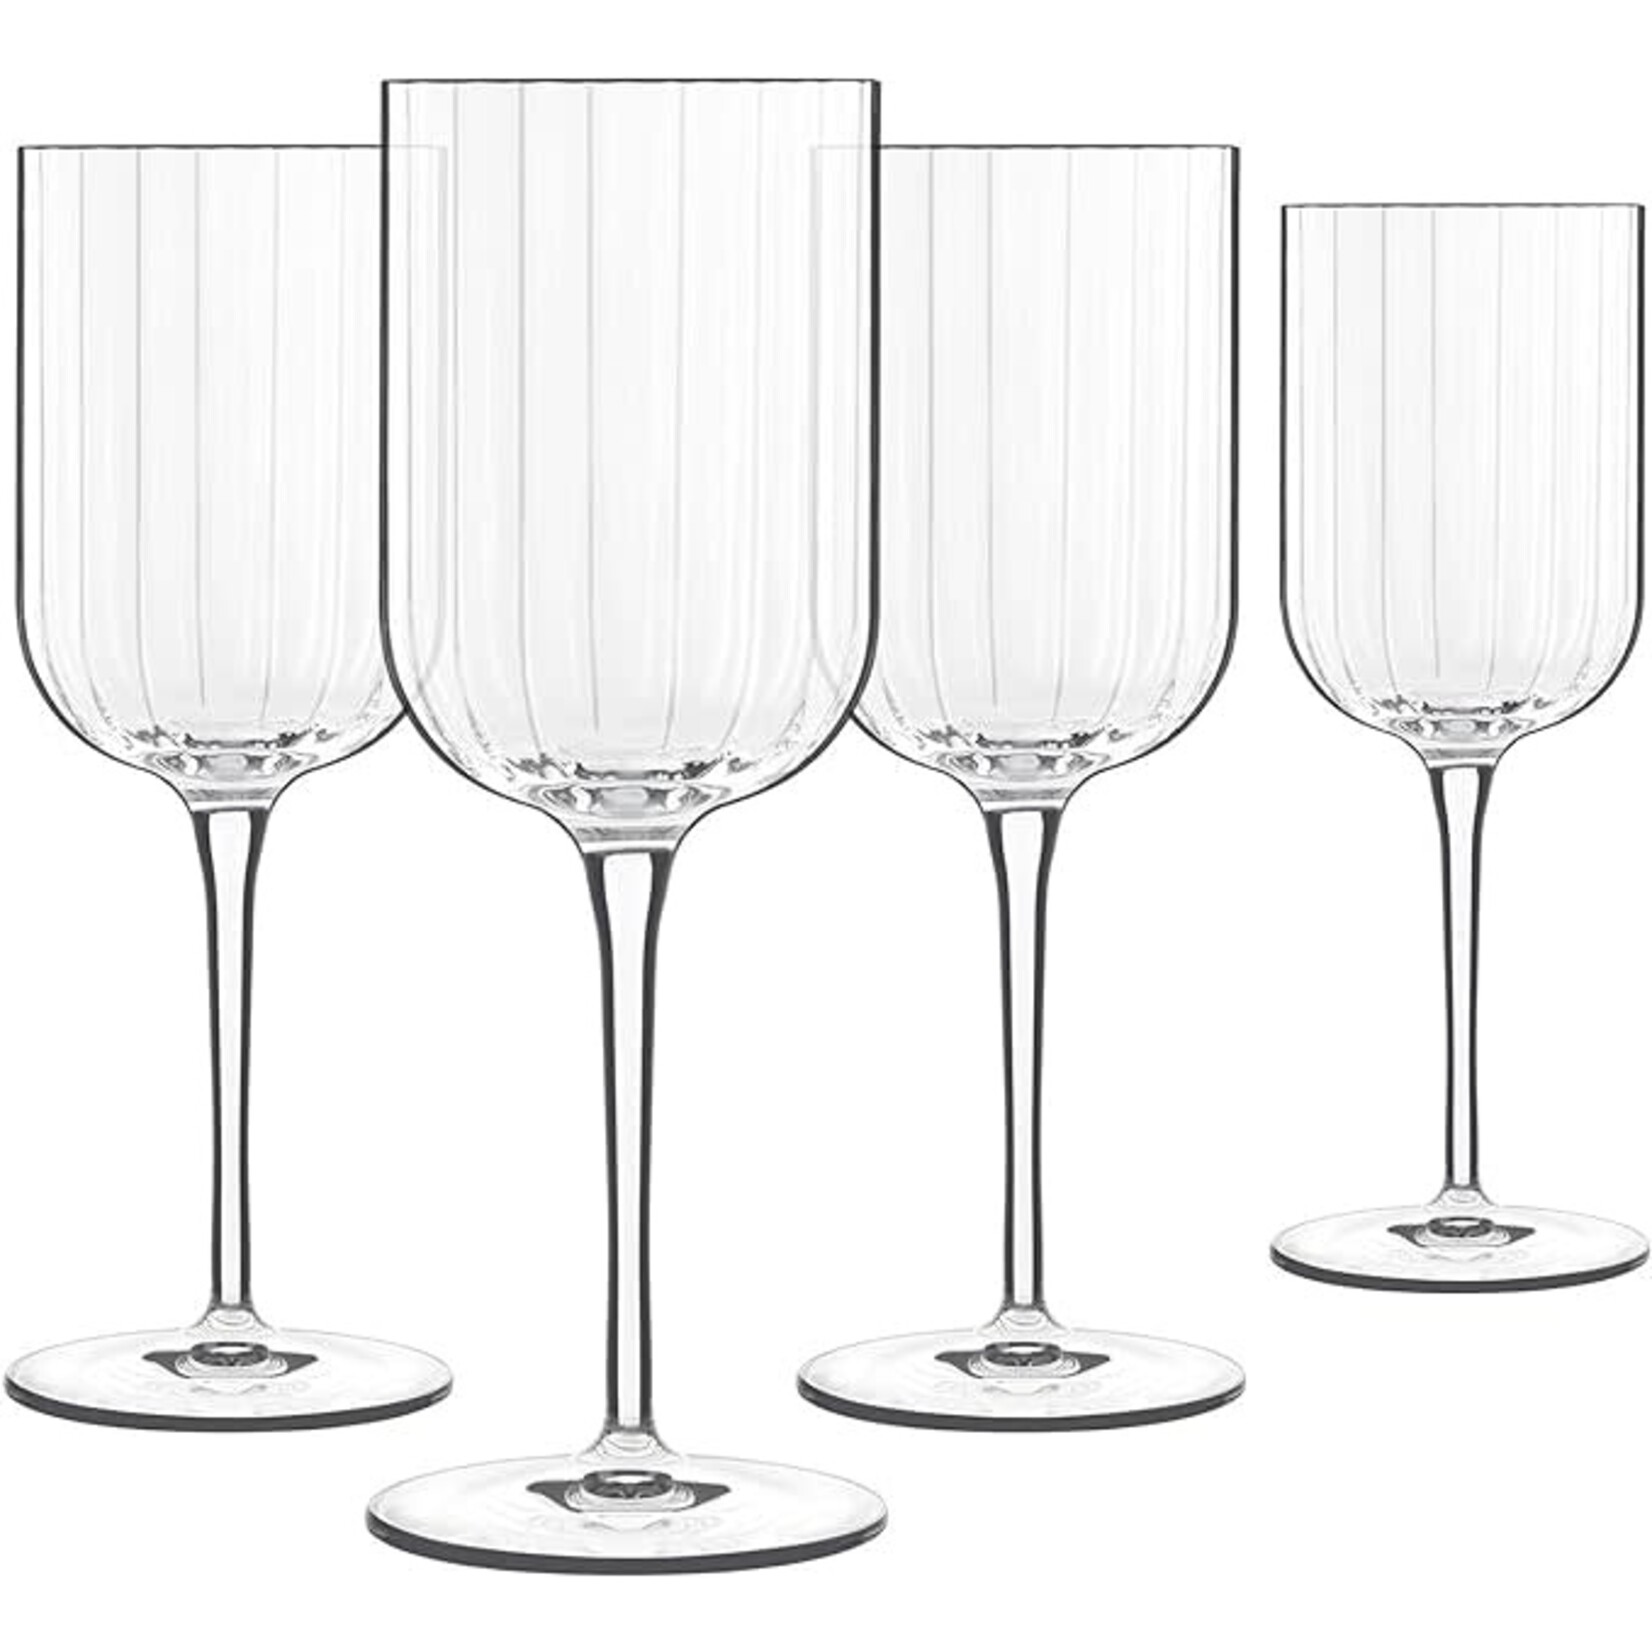 LUIGI BORMIOLI LUIGI BORMIOLI White Wine Glasses 9.5oz Set/4 - Bach